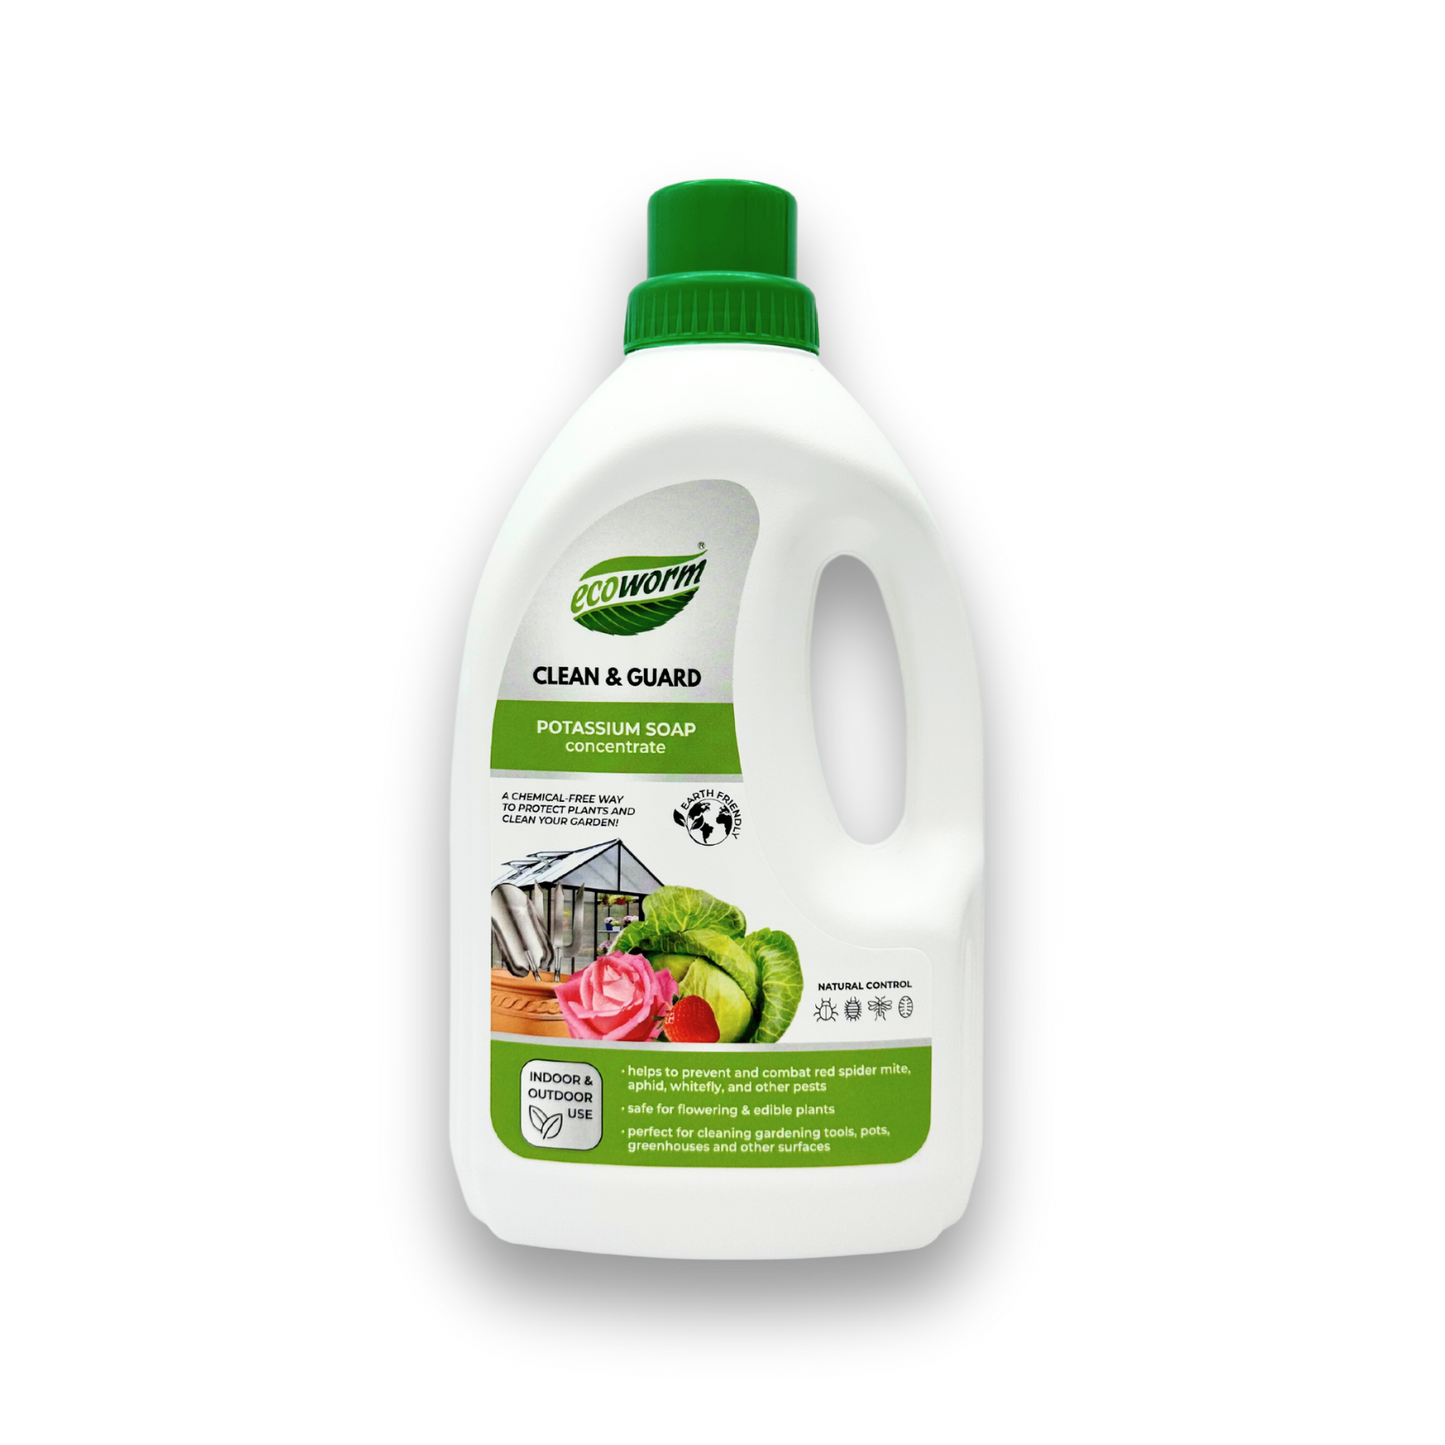 Ecoworm Potassium Soap Concentrate 1L